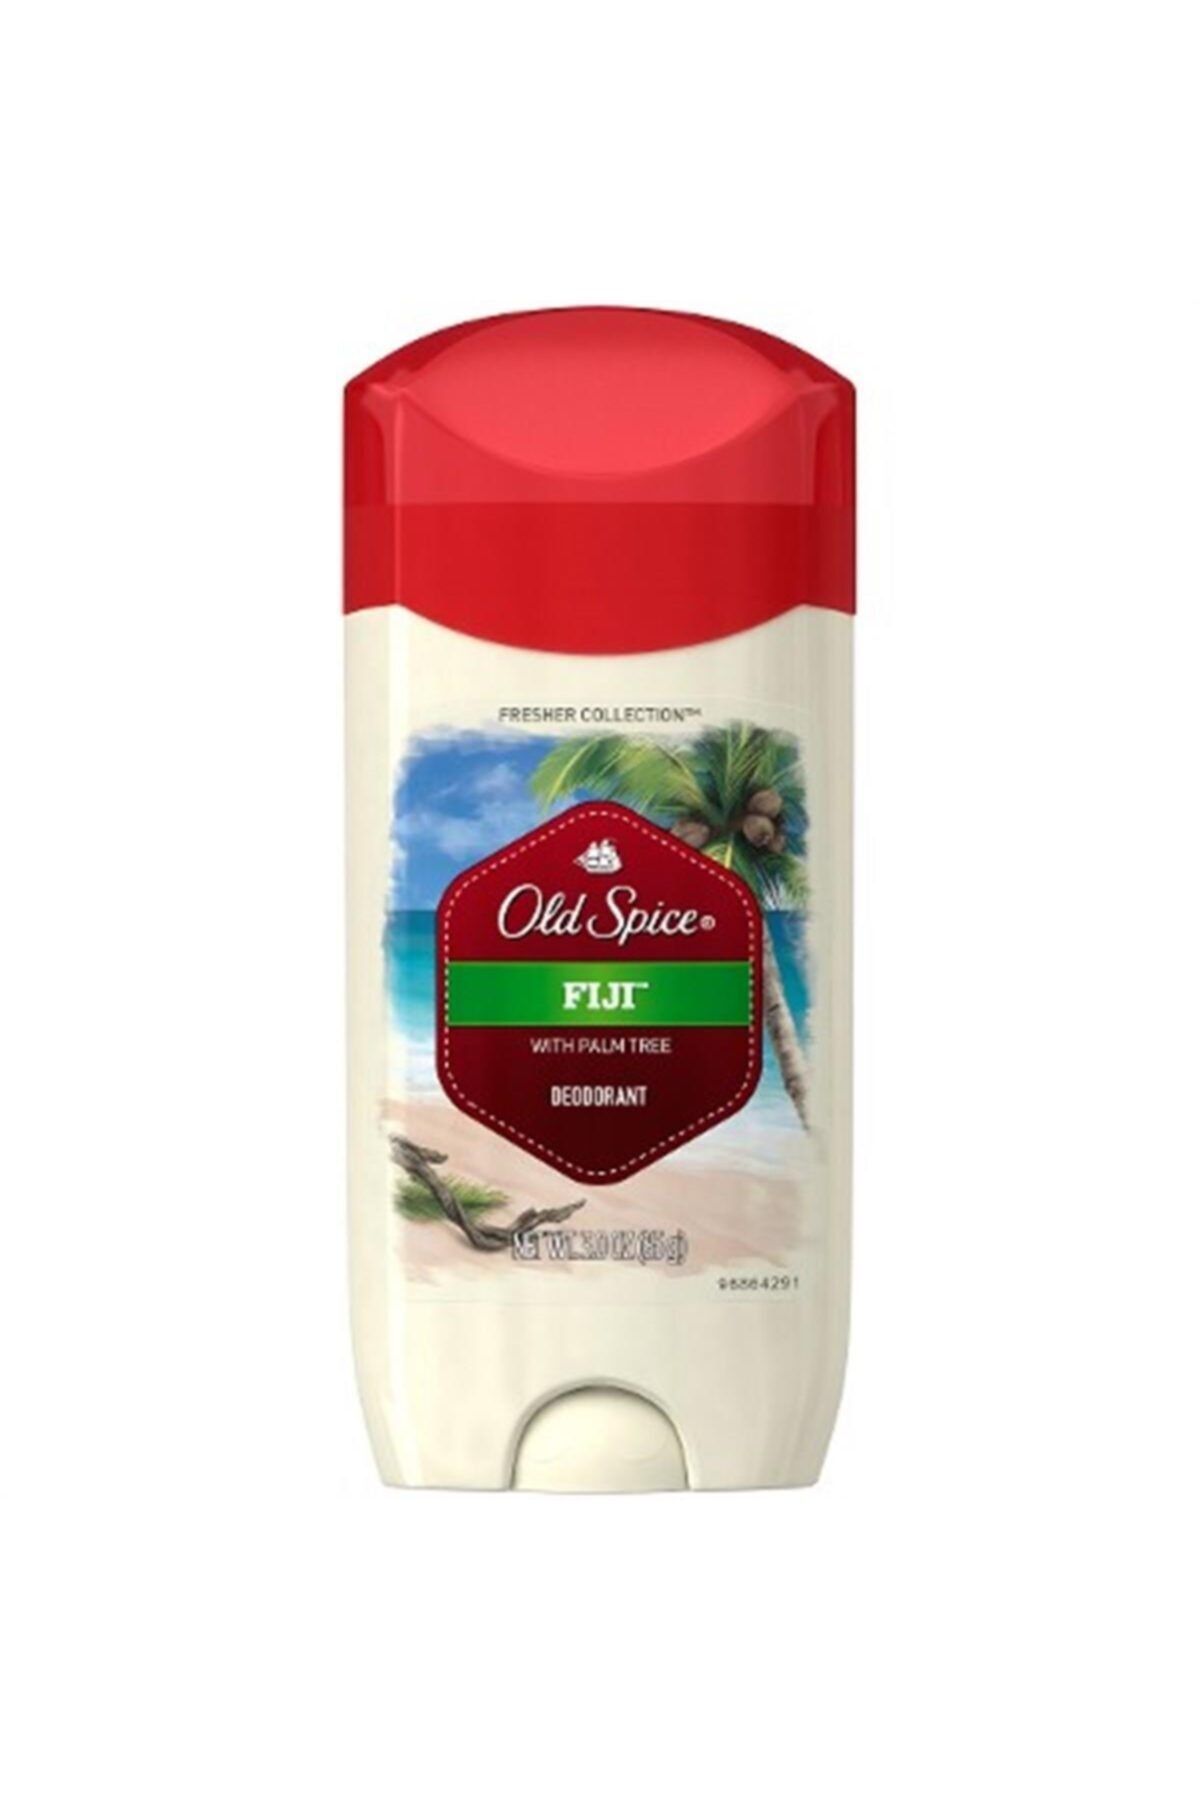 Old Spice Fiji Deodorant 85 Gr